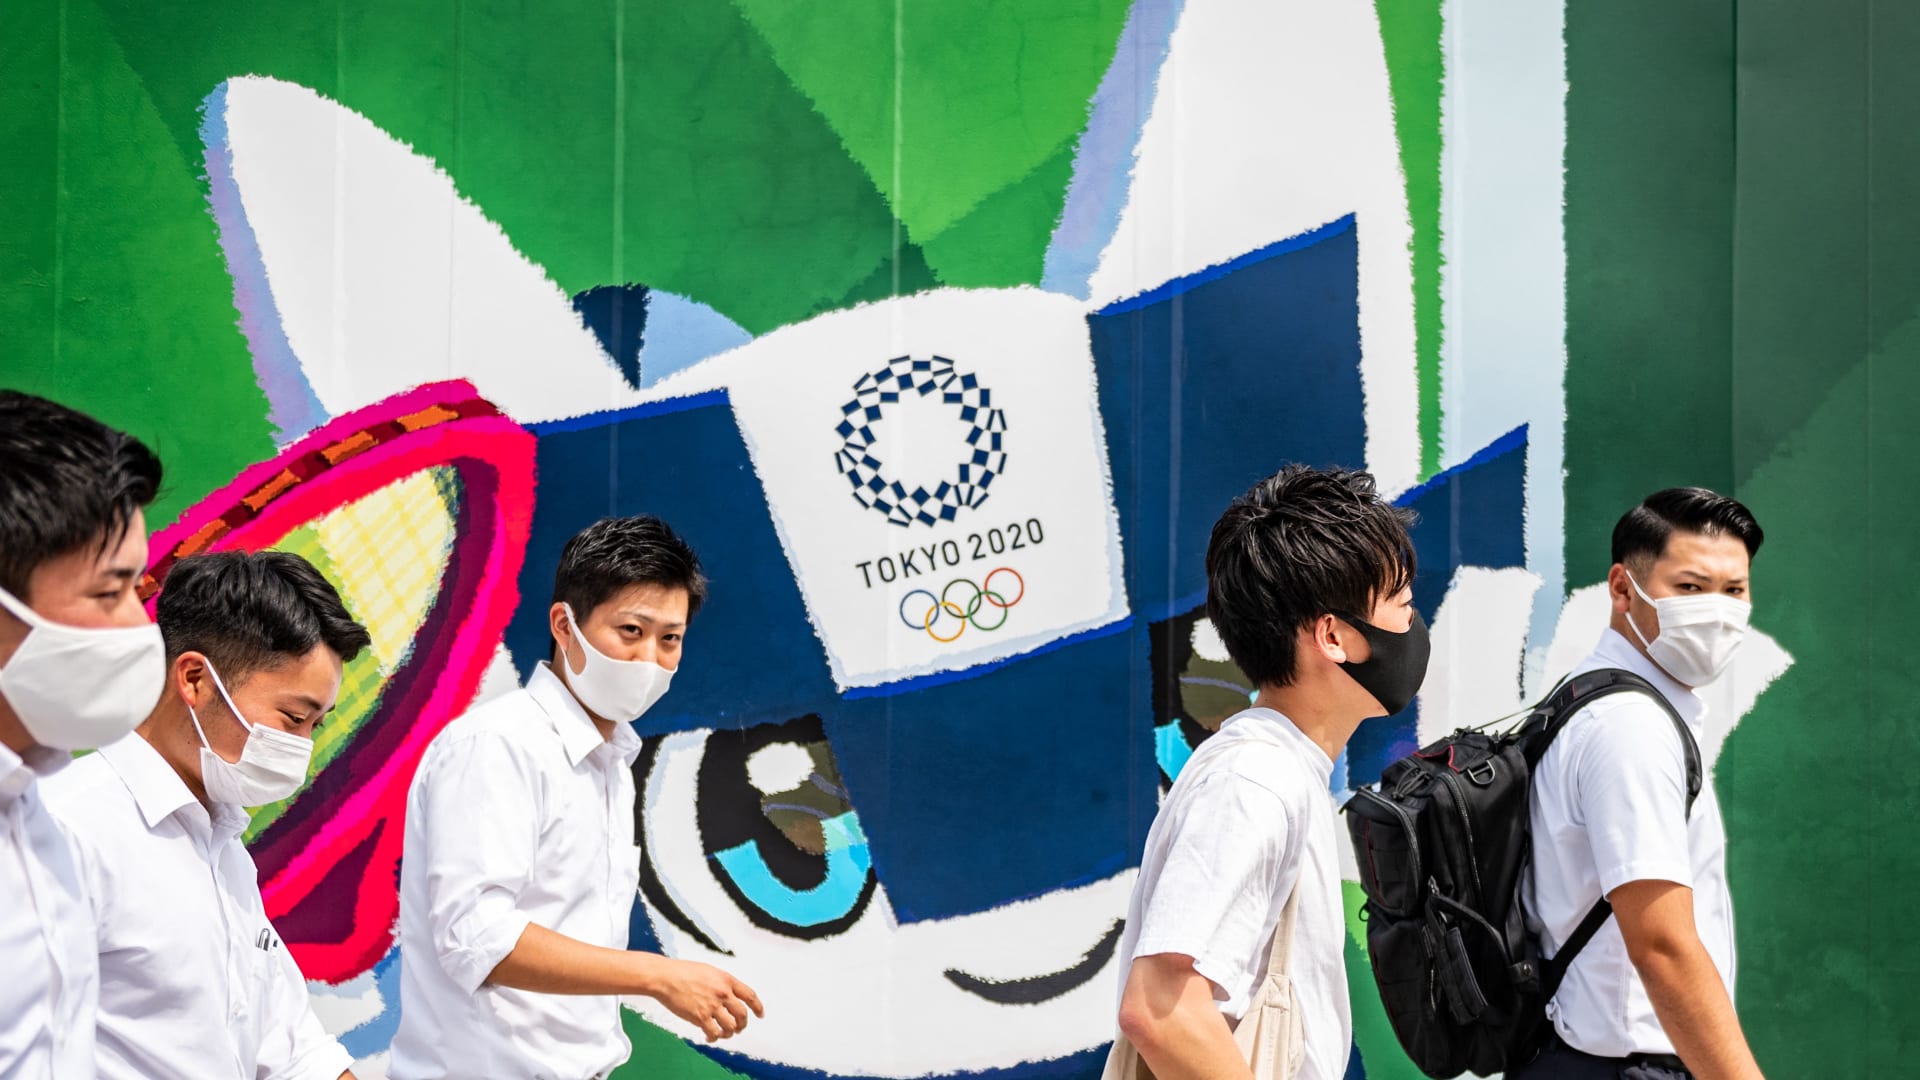 المشاة يمرون أمام لافتات أولمبية طوكيو 2020 خارج موقع بناء في طوكيو في 18 يونيو 2021